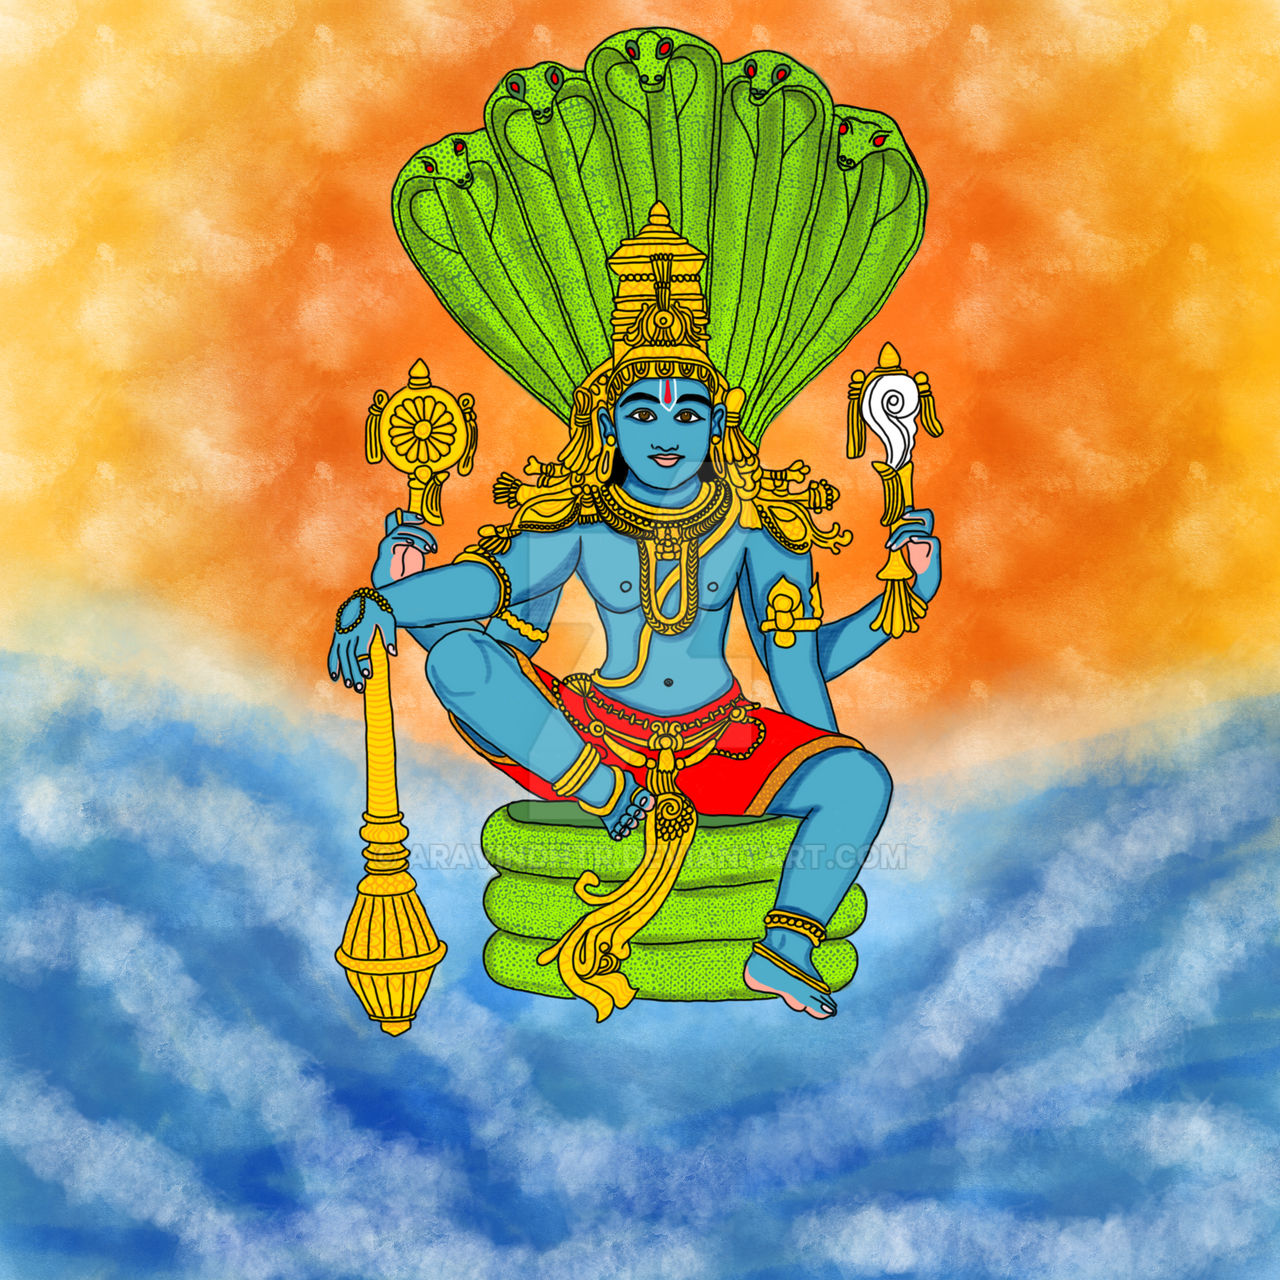 Lord Vishnu, the protector by aravindhtr on DeviantArt